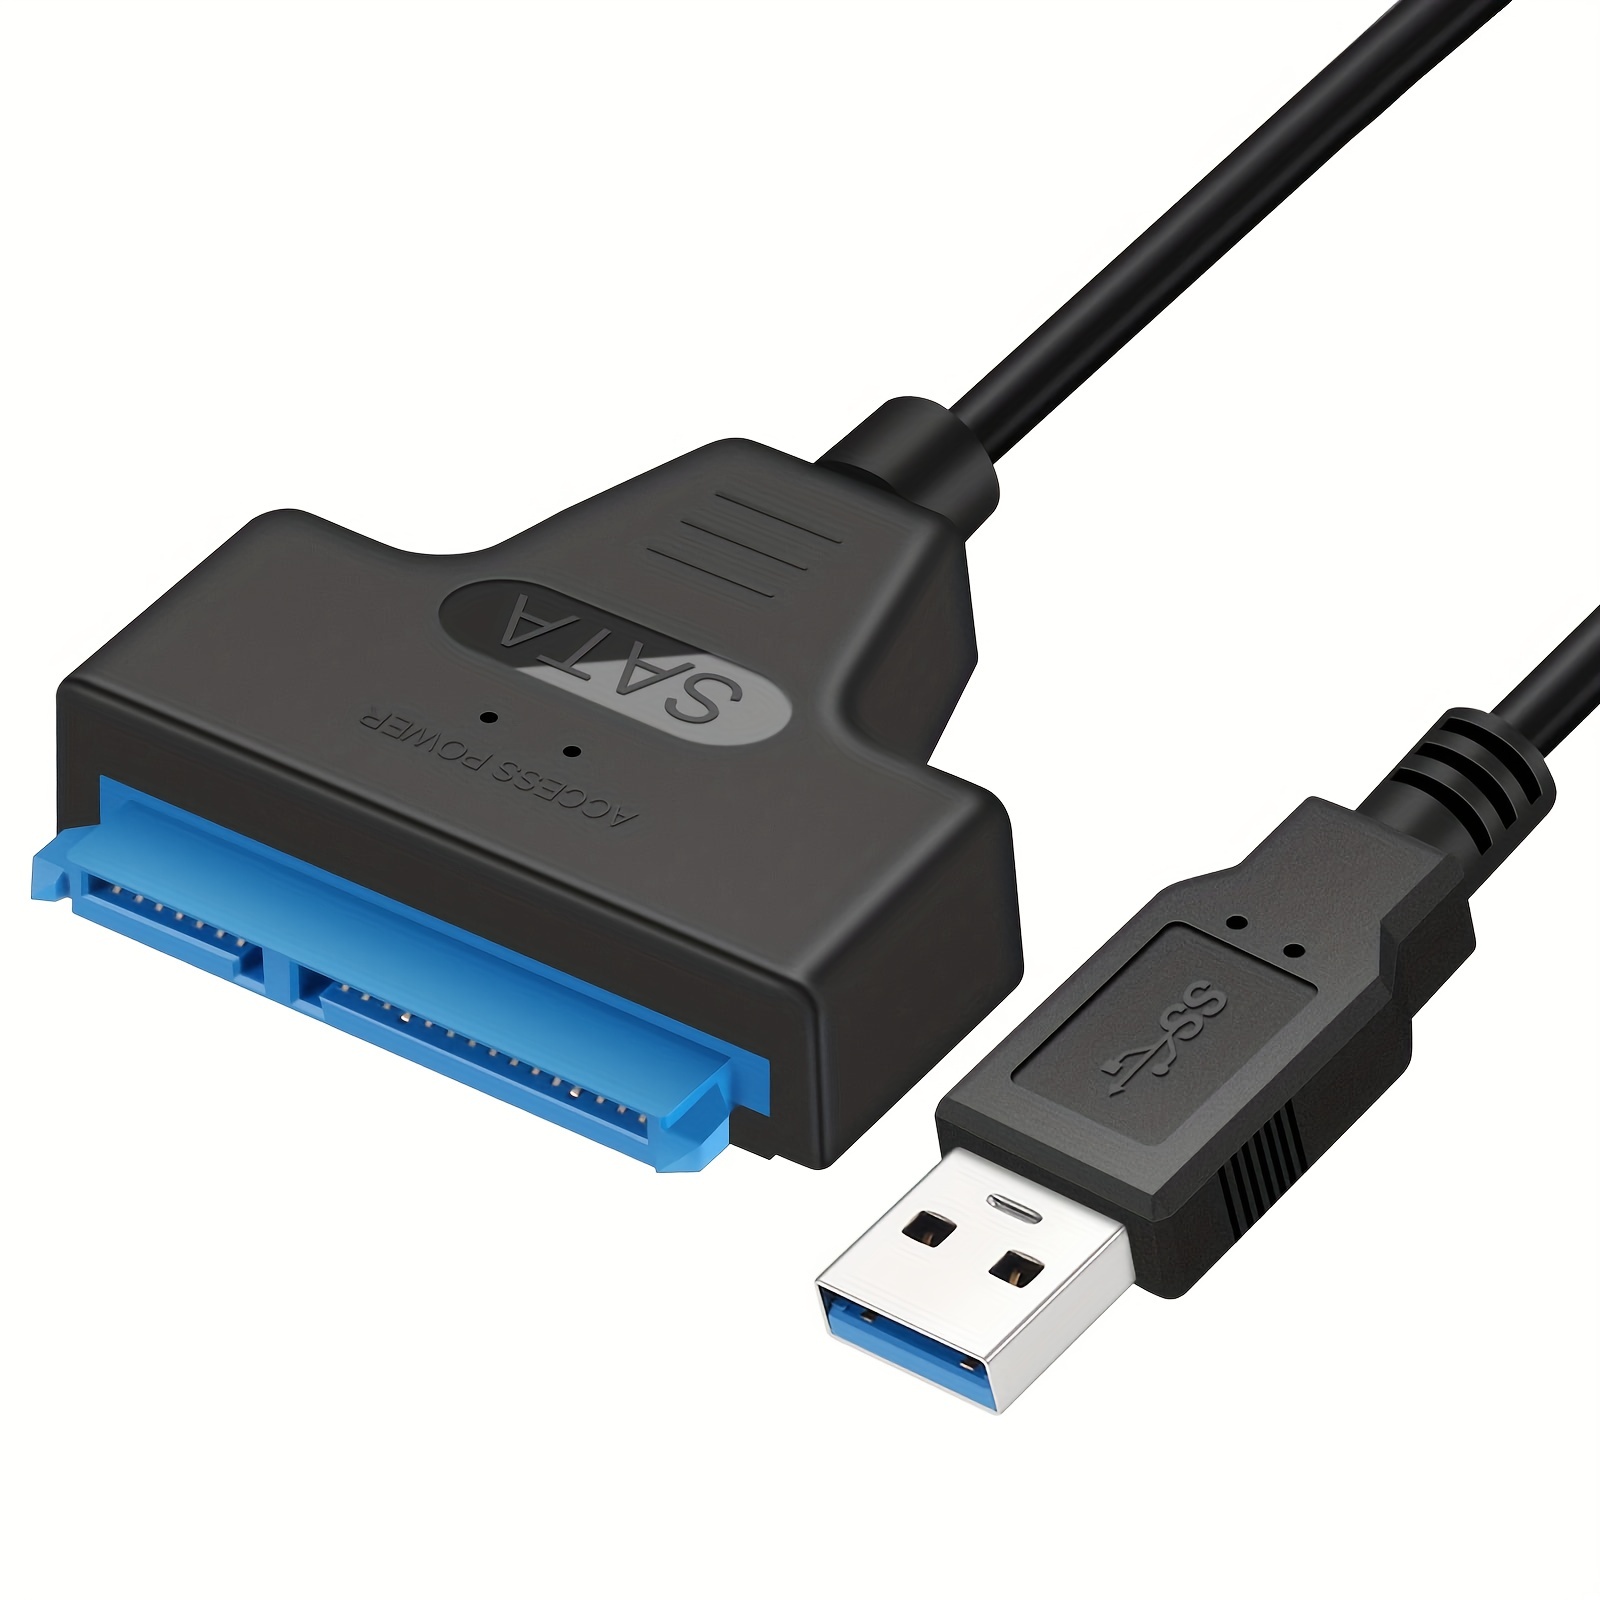 Cable de extensión USB 3.0 macho a hembra [negro] de 3 pies+ USB 3.0 a SATA  disco duro externo para disco duro externo de 2,5 o 3,5 pulgadas HDD, SSD